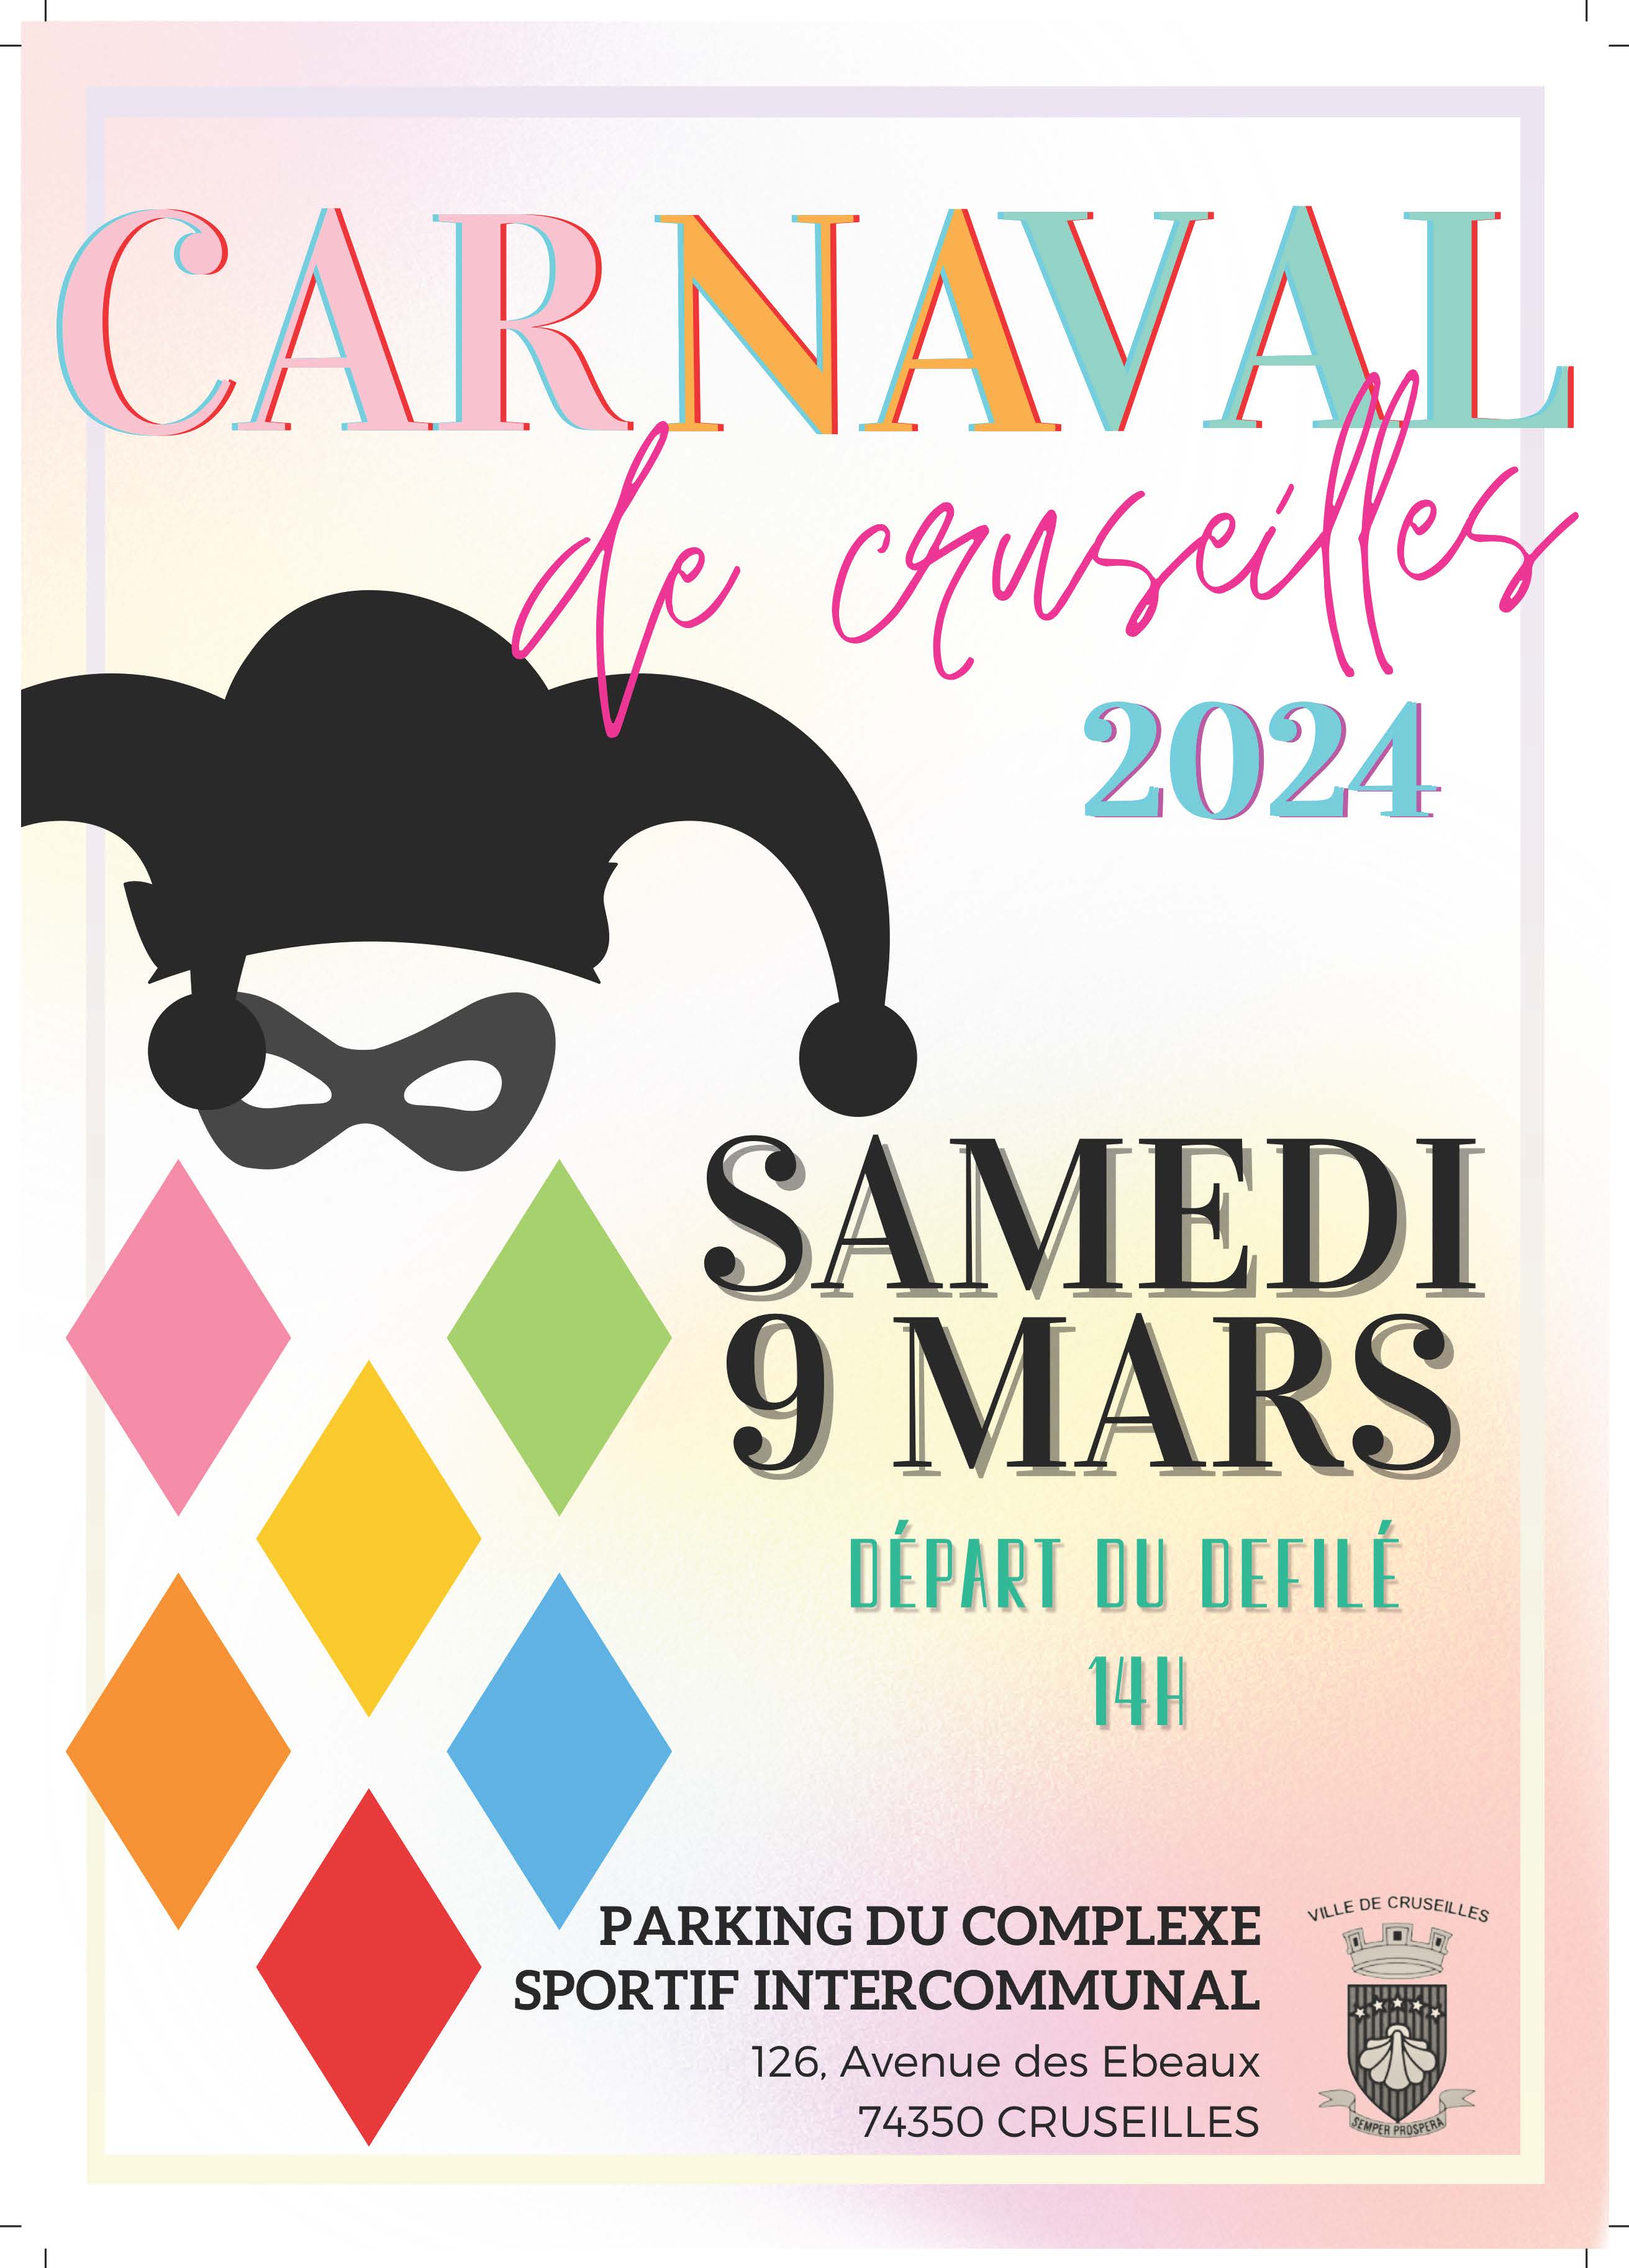 Grand carnaval de Cruseilles